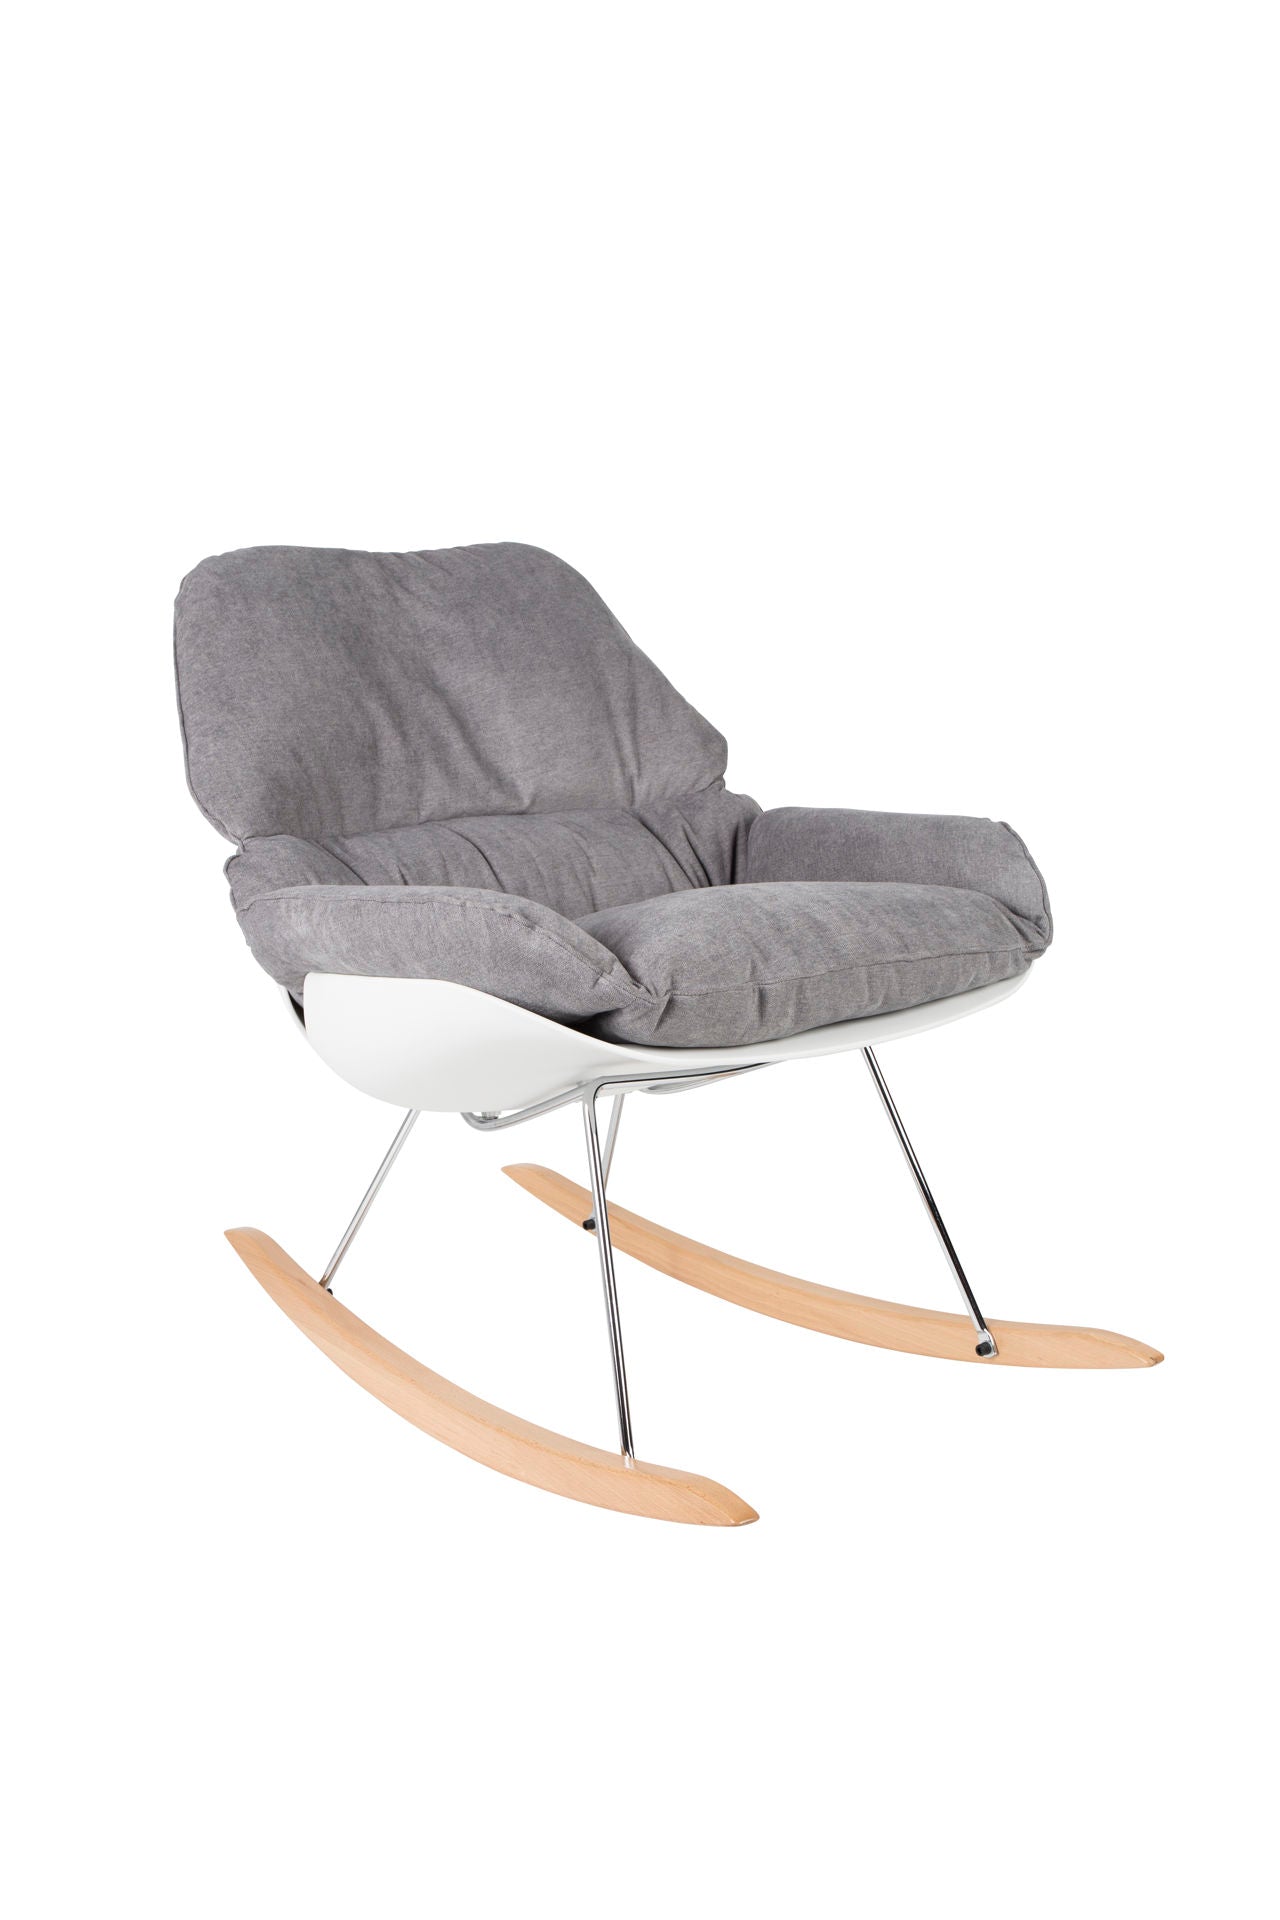 Nancy's East Renton Highlands Lounge Chair - Modern - Grijs - Polypropyleen, Schuim, Hout - 98 cm x 76 cm x 84 cm